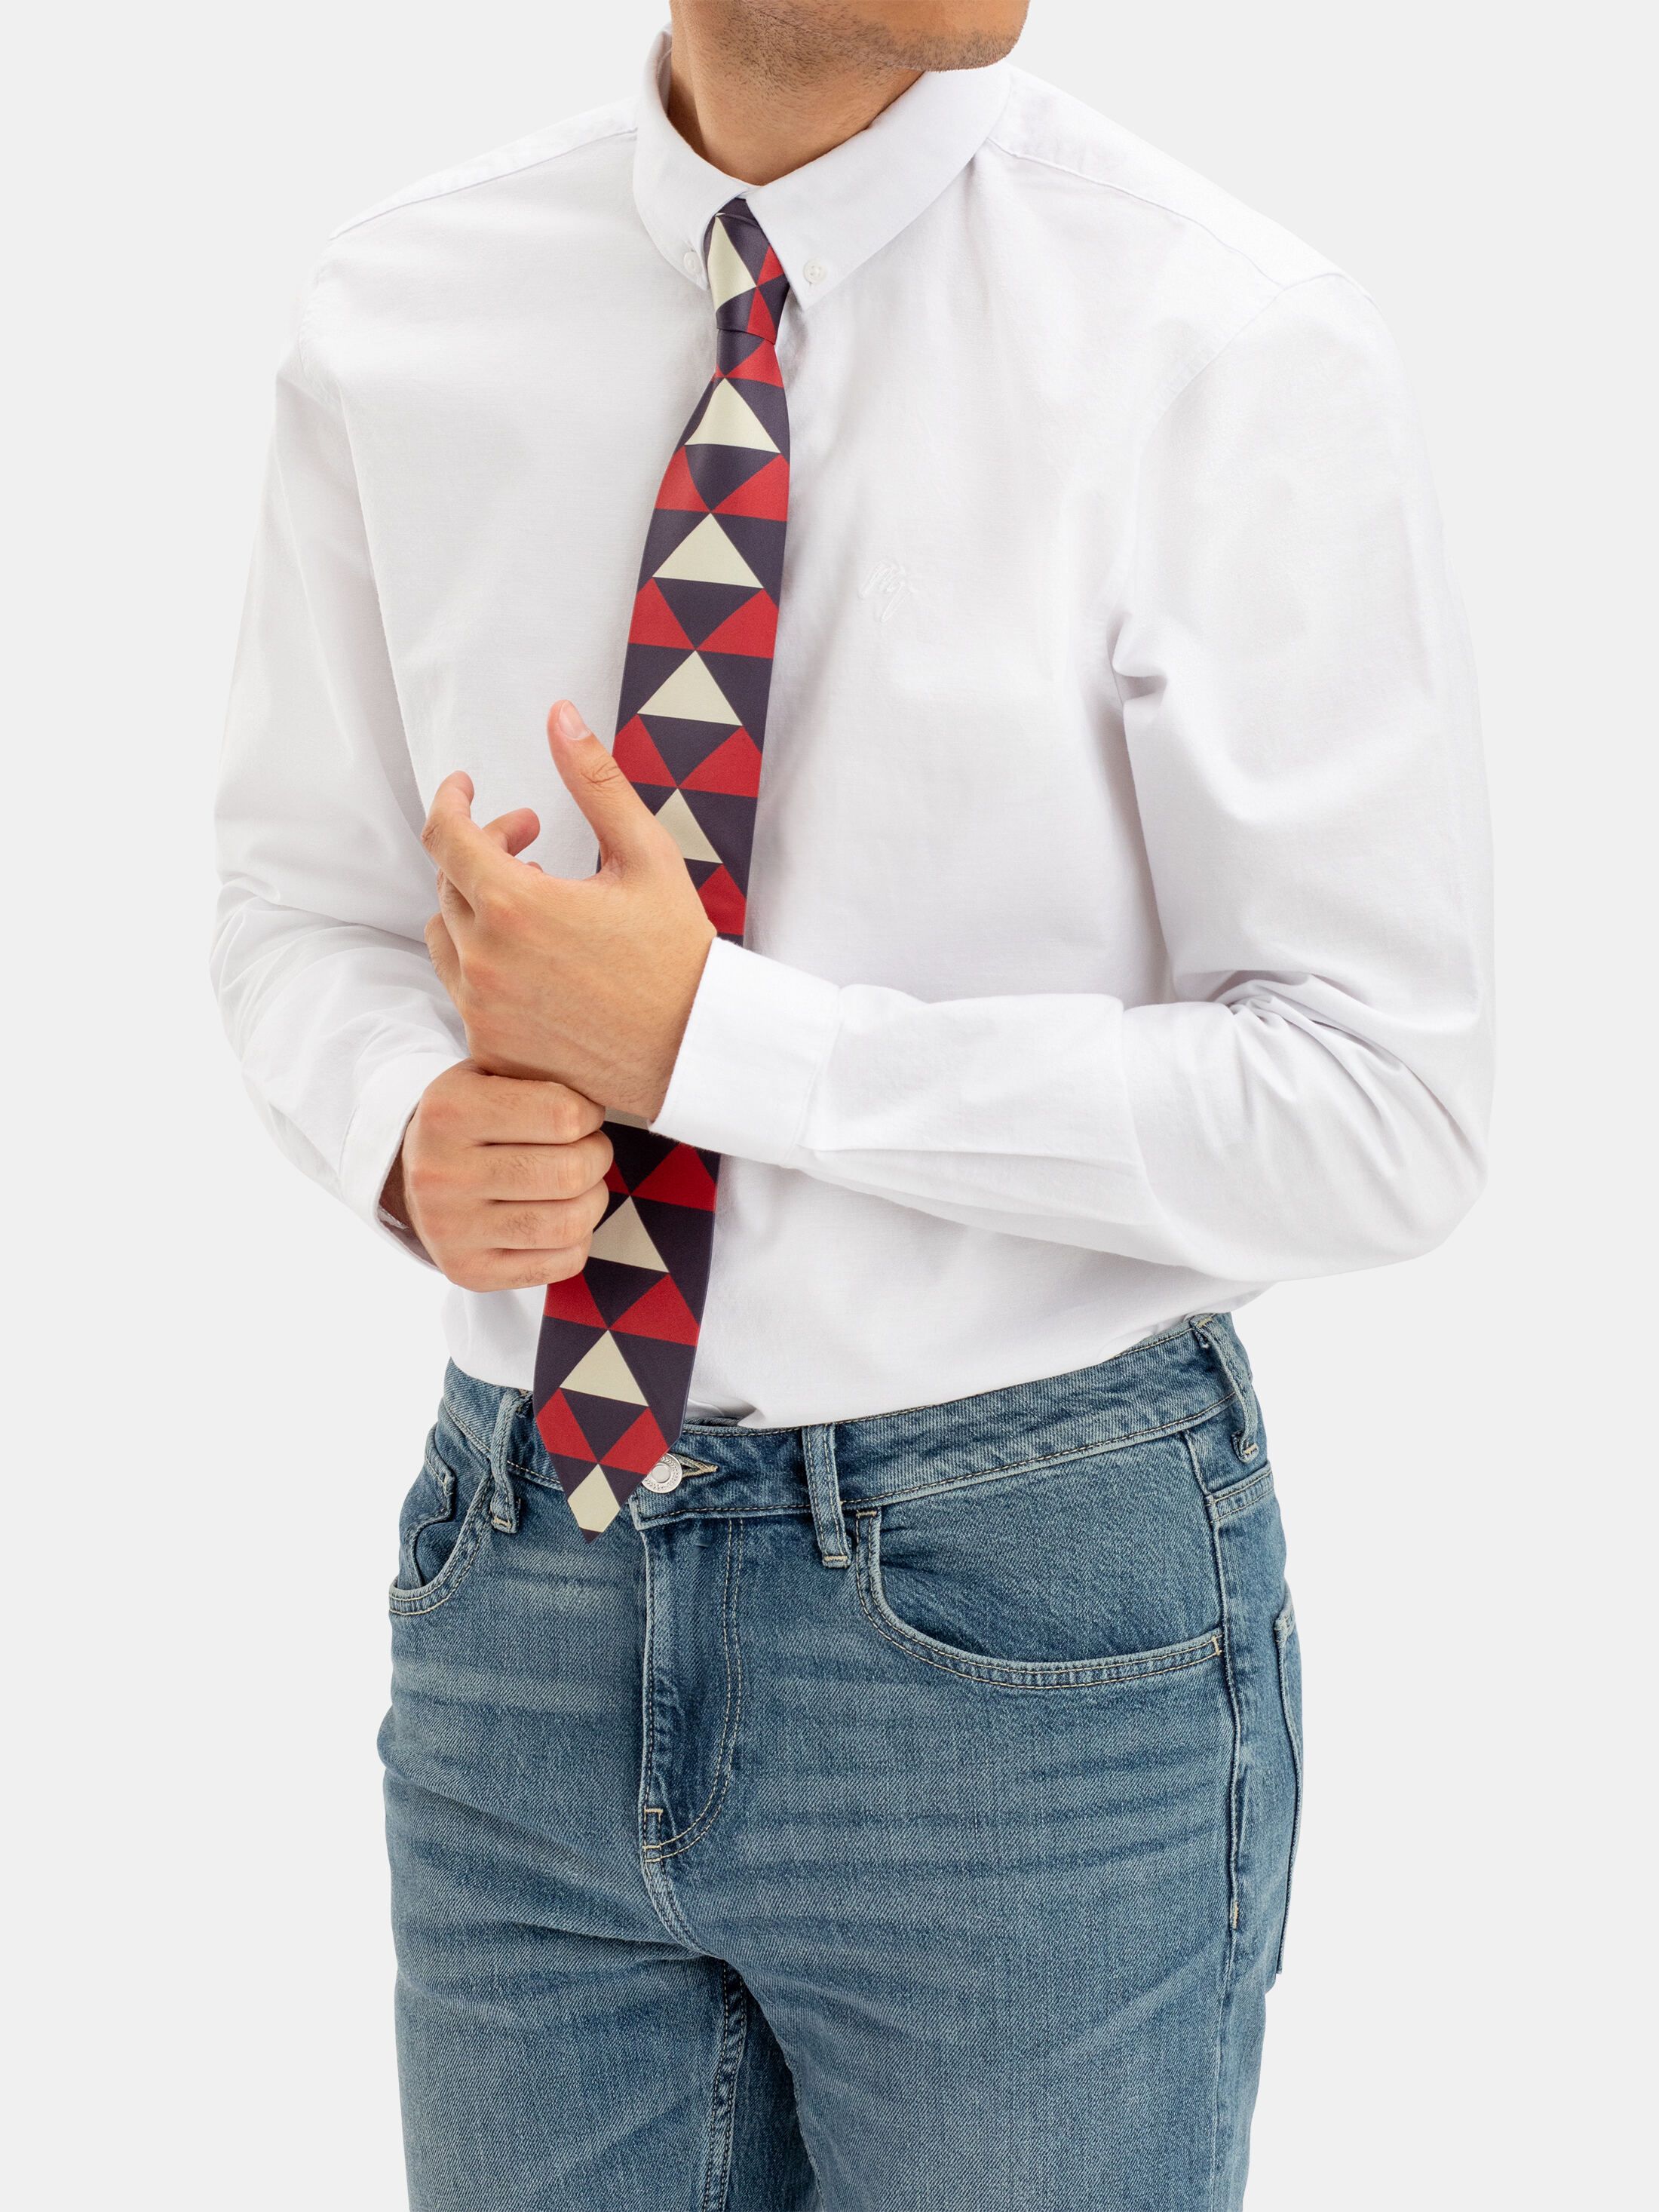 Welche Faktoren es vorm Kauf die Krawatte motiv zu beurteilen gilt